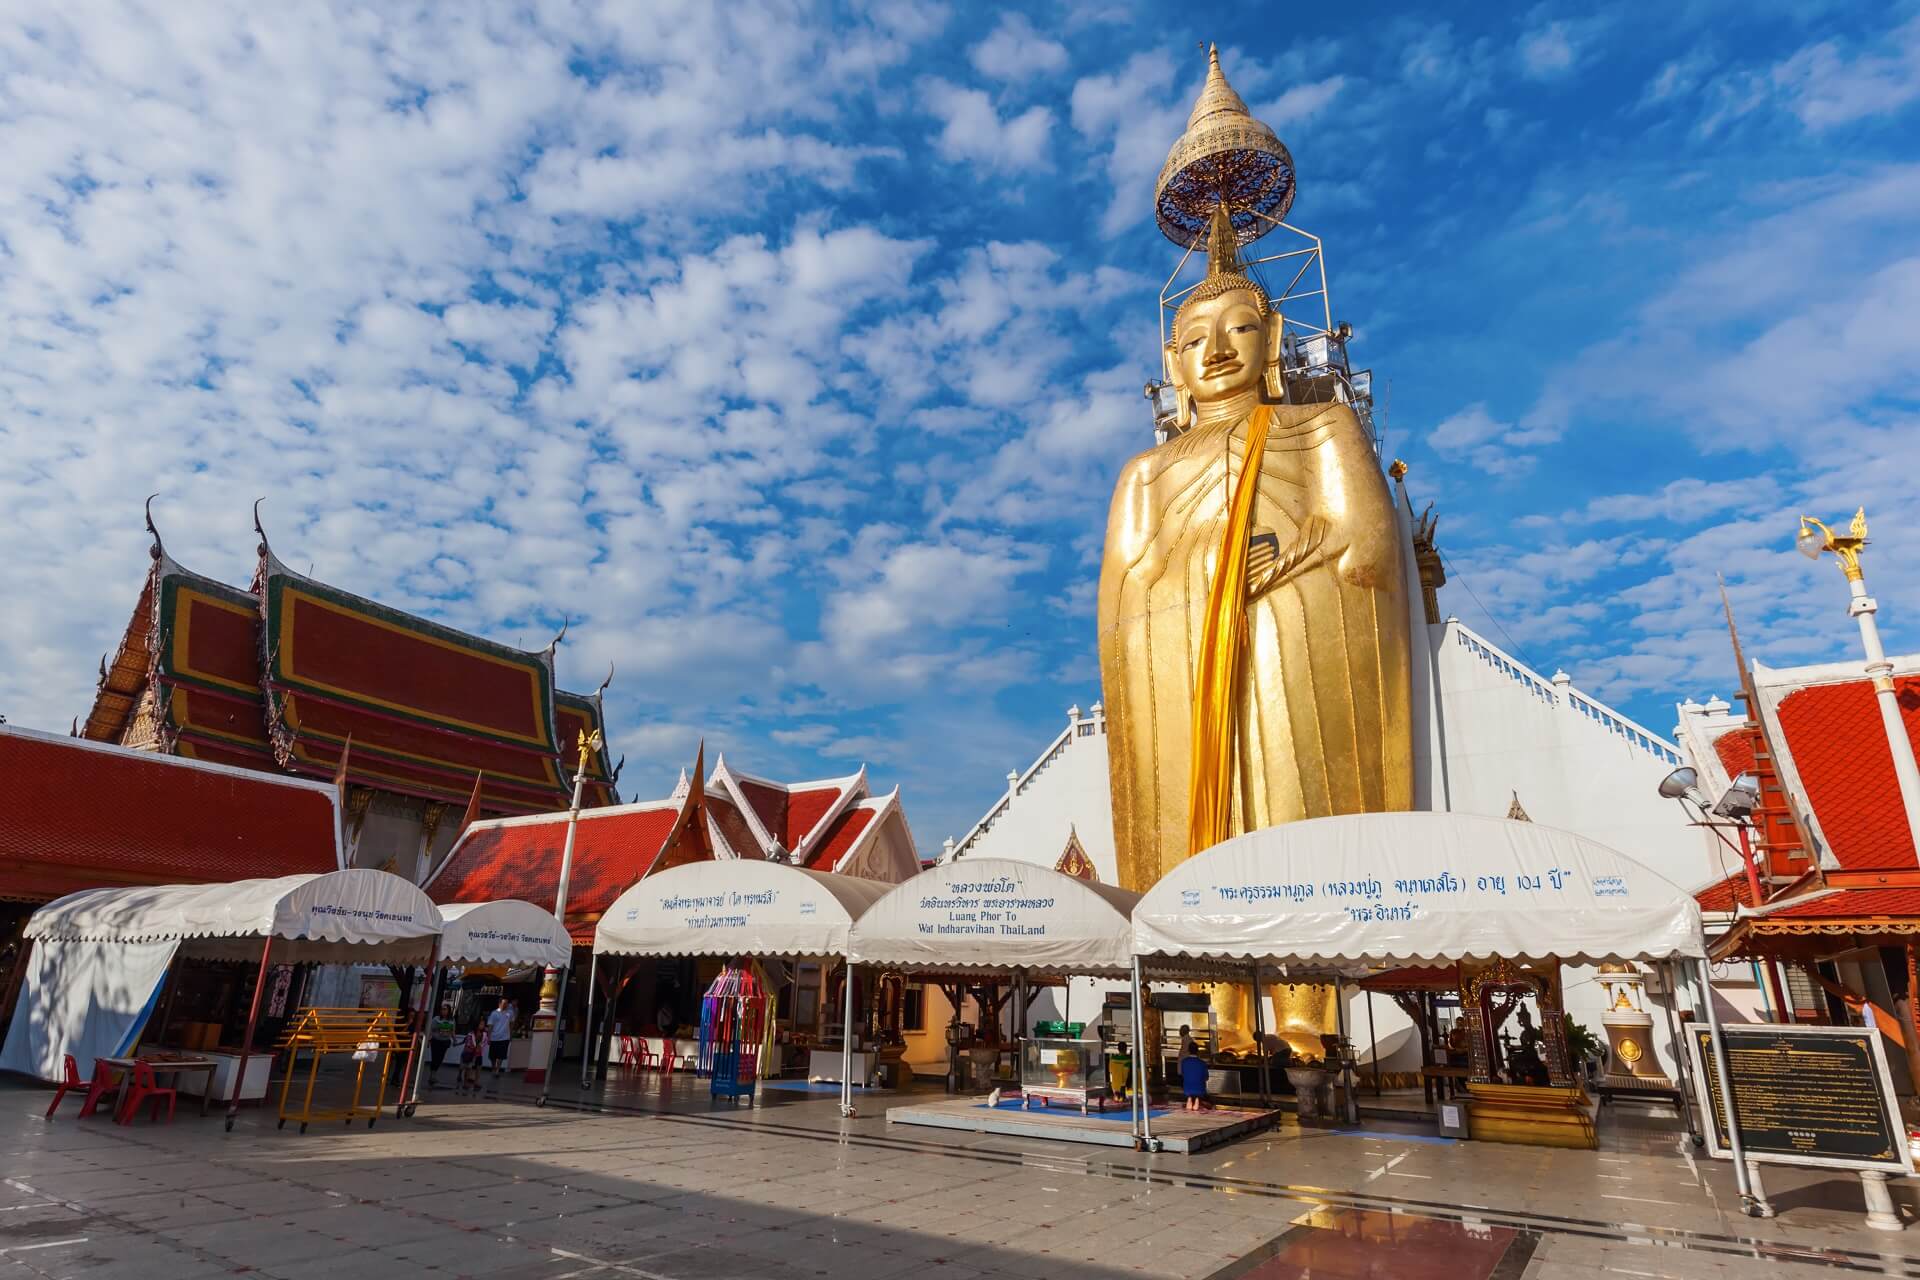 Der stehende Buddha in Bangkok ist sehr beeindruckend.